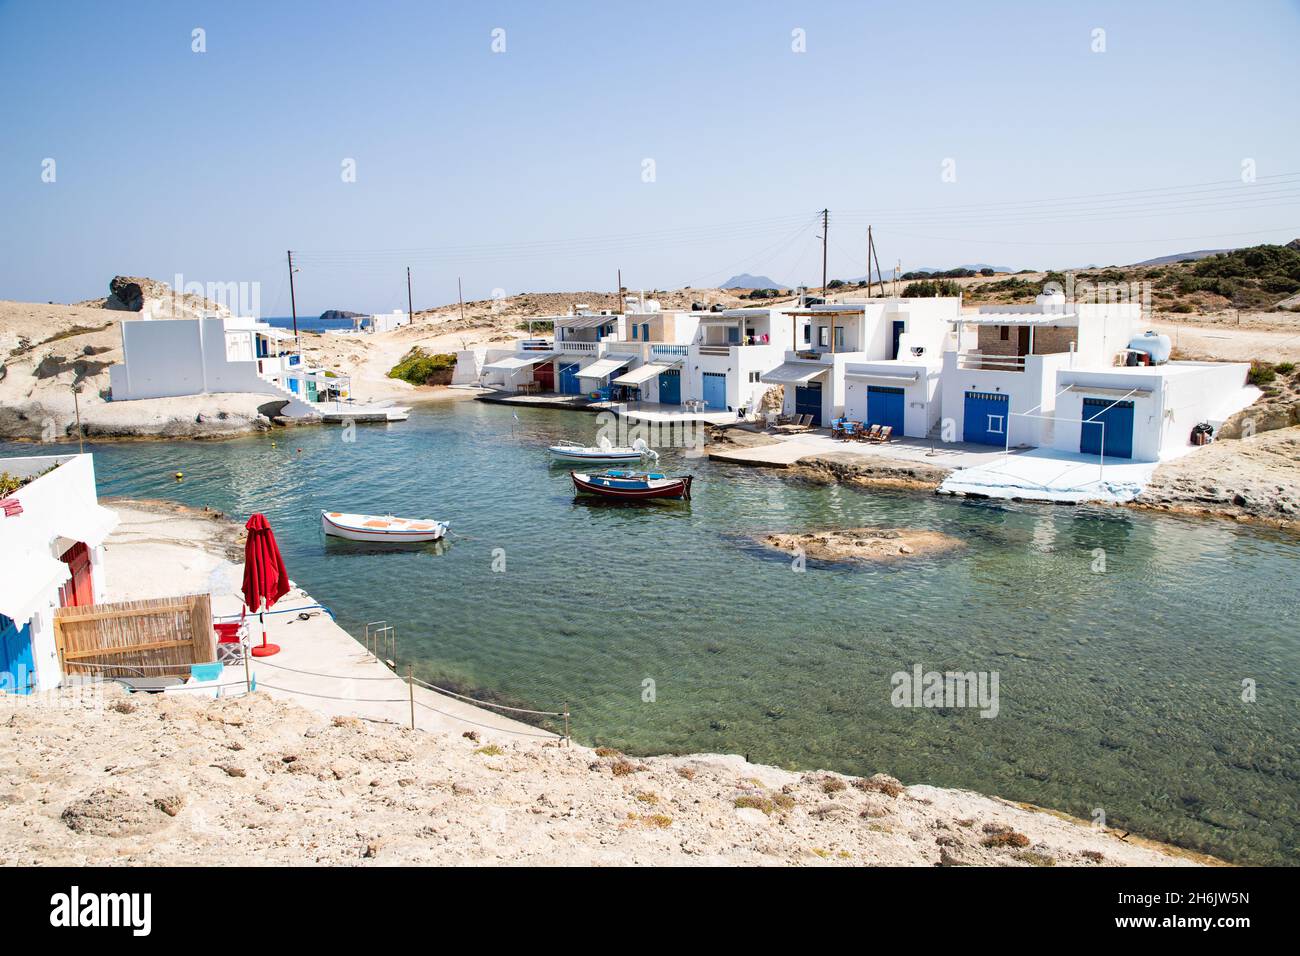 Maisons de pêcheurs traditionnelles au bord de la mer à Milos, Cyclades, Mer Egéé, Iles grecques, Grèce, Europe Banque D'Images